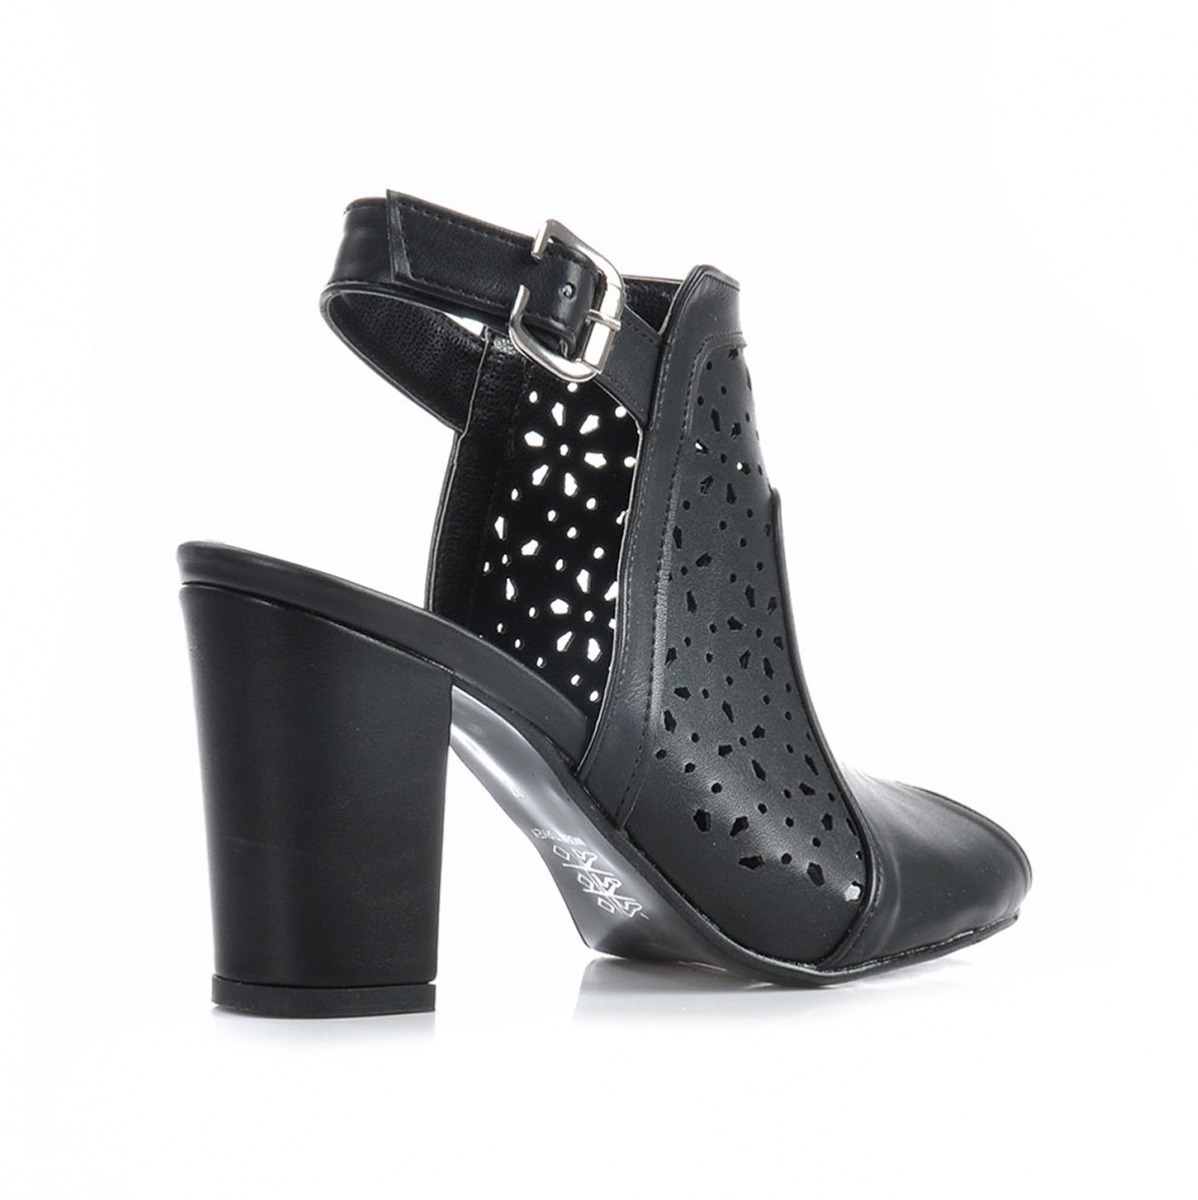 Flo Kadın  Siyah Klasik Topuklu Ayakkabı VZN-226Y. 3